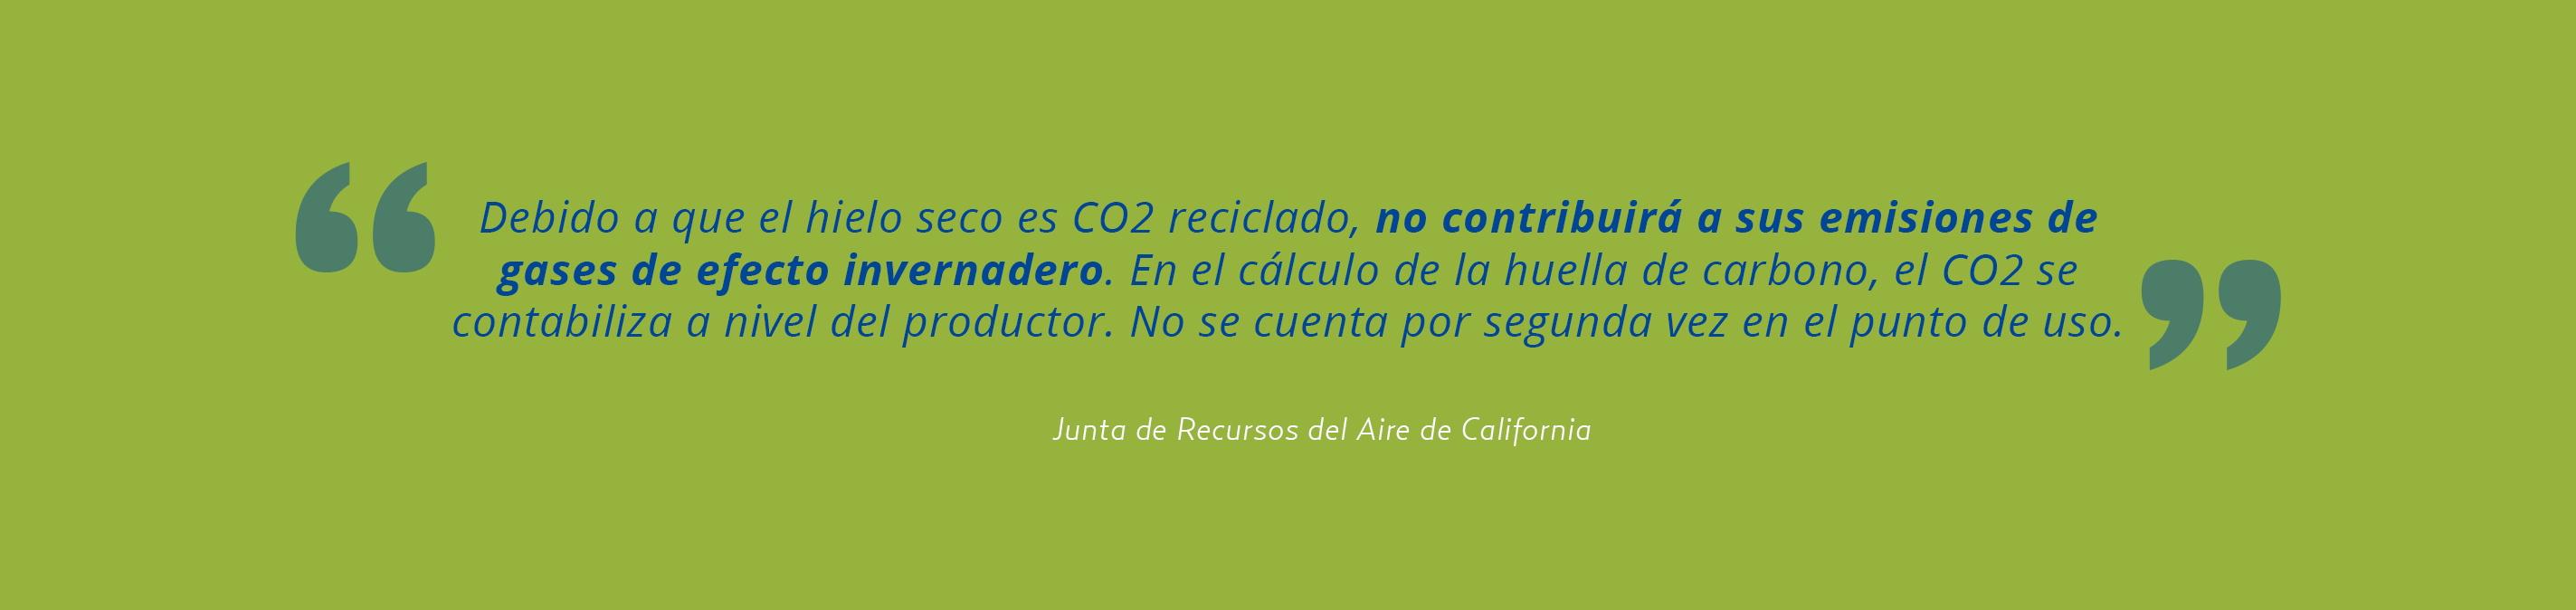 Sostenibilidad medioambiental del hielo seco - Junta de Recursos del Aire de California